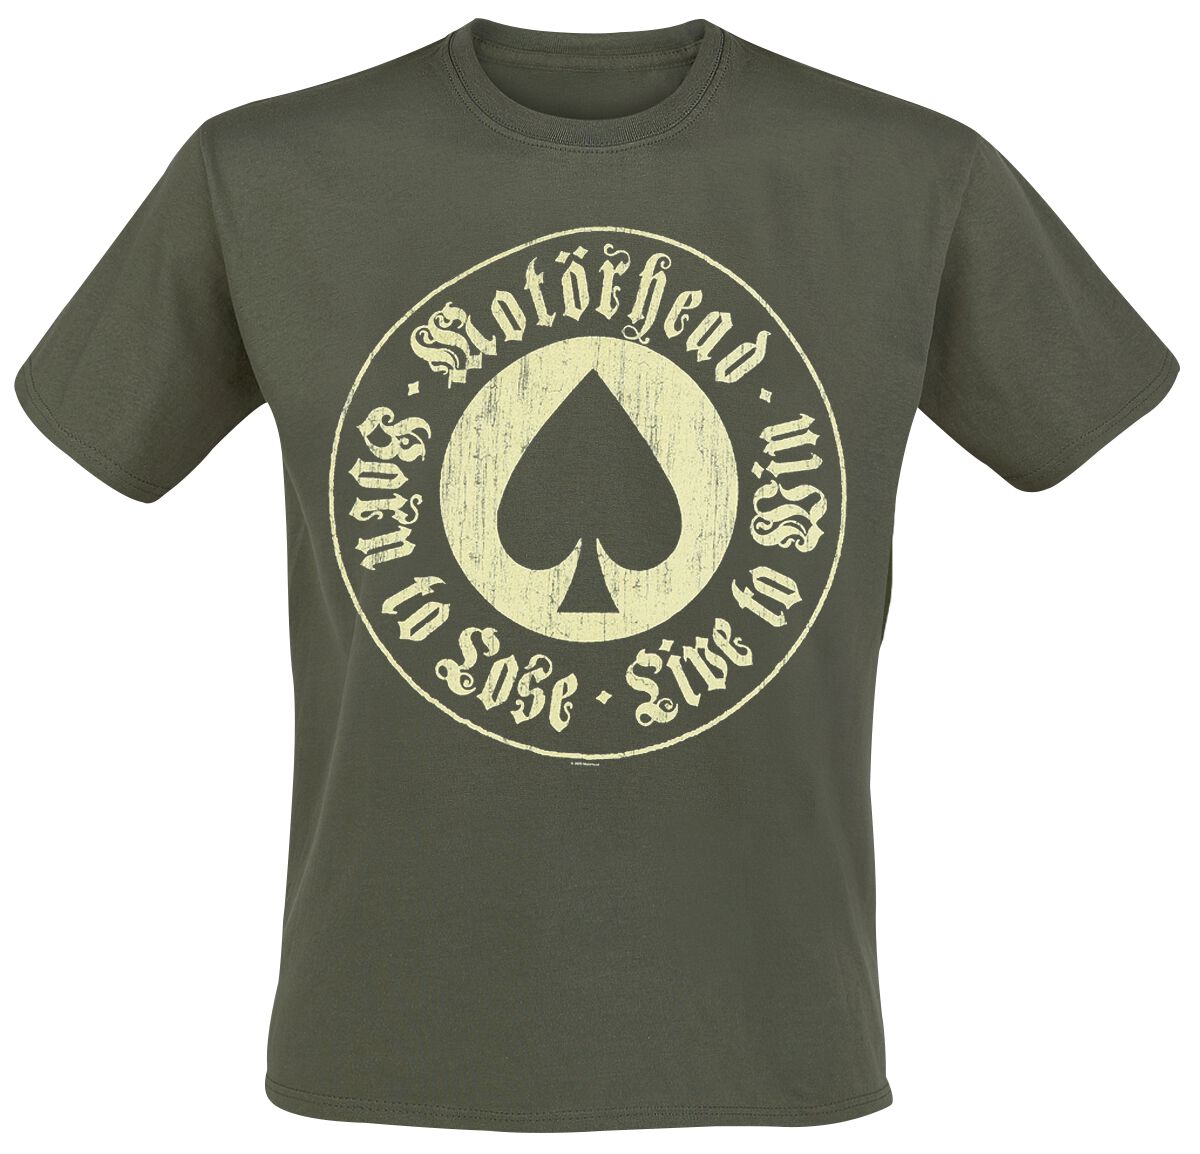 Motörhead T-Shirt - Born To Lose - S bis XXL - für Männer - Größe S - khaki  - Lizenziertes Merchandise!